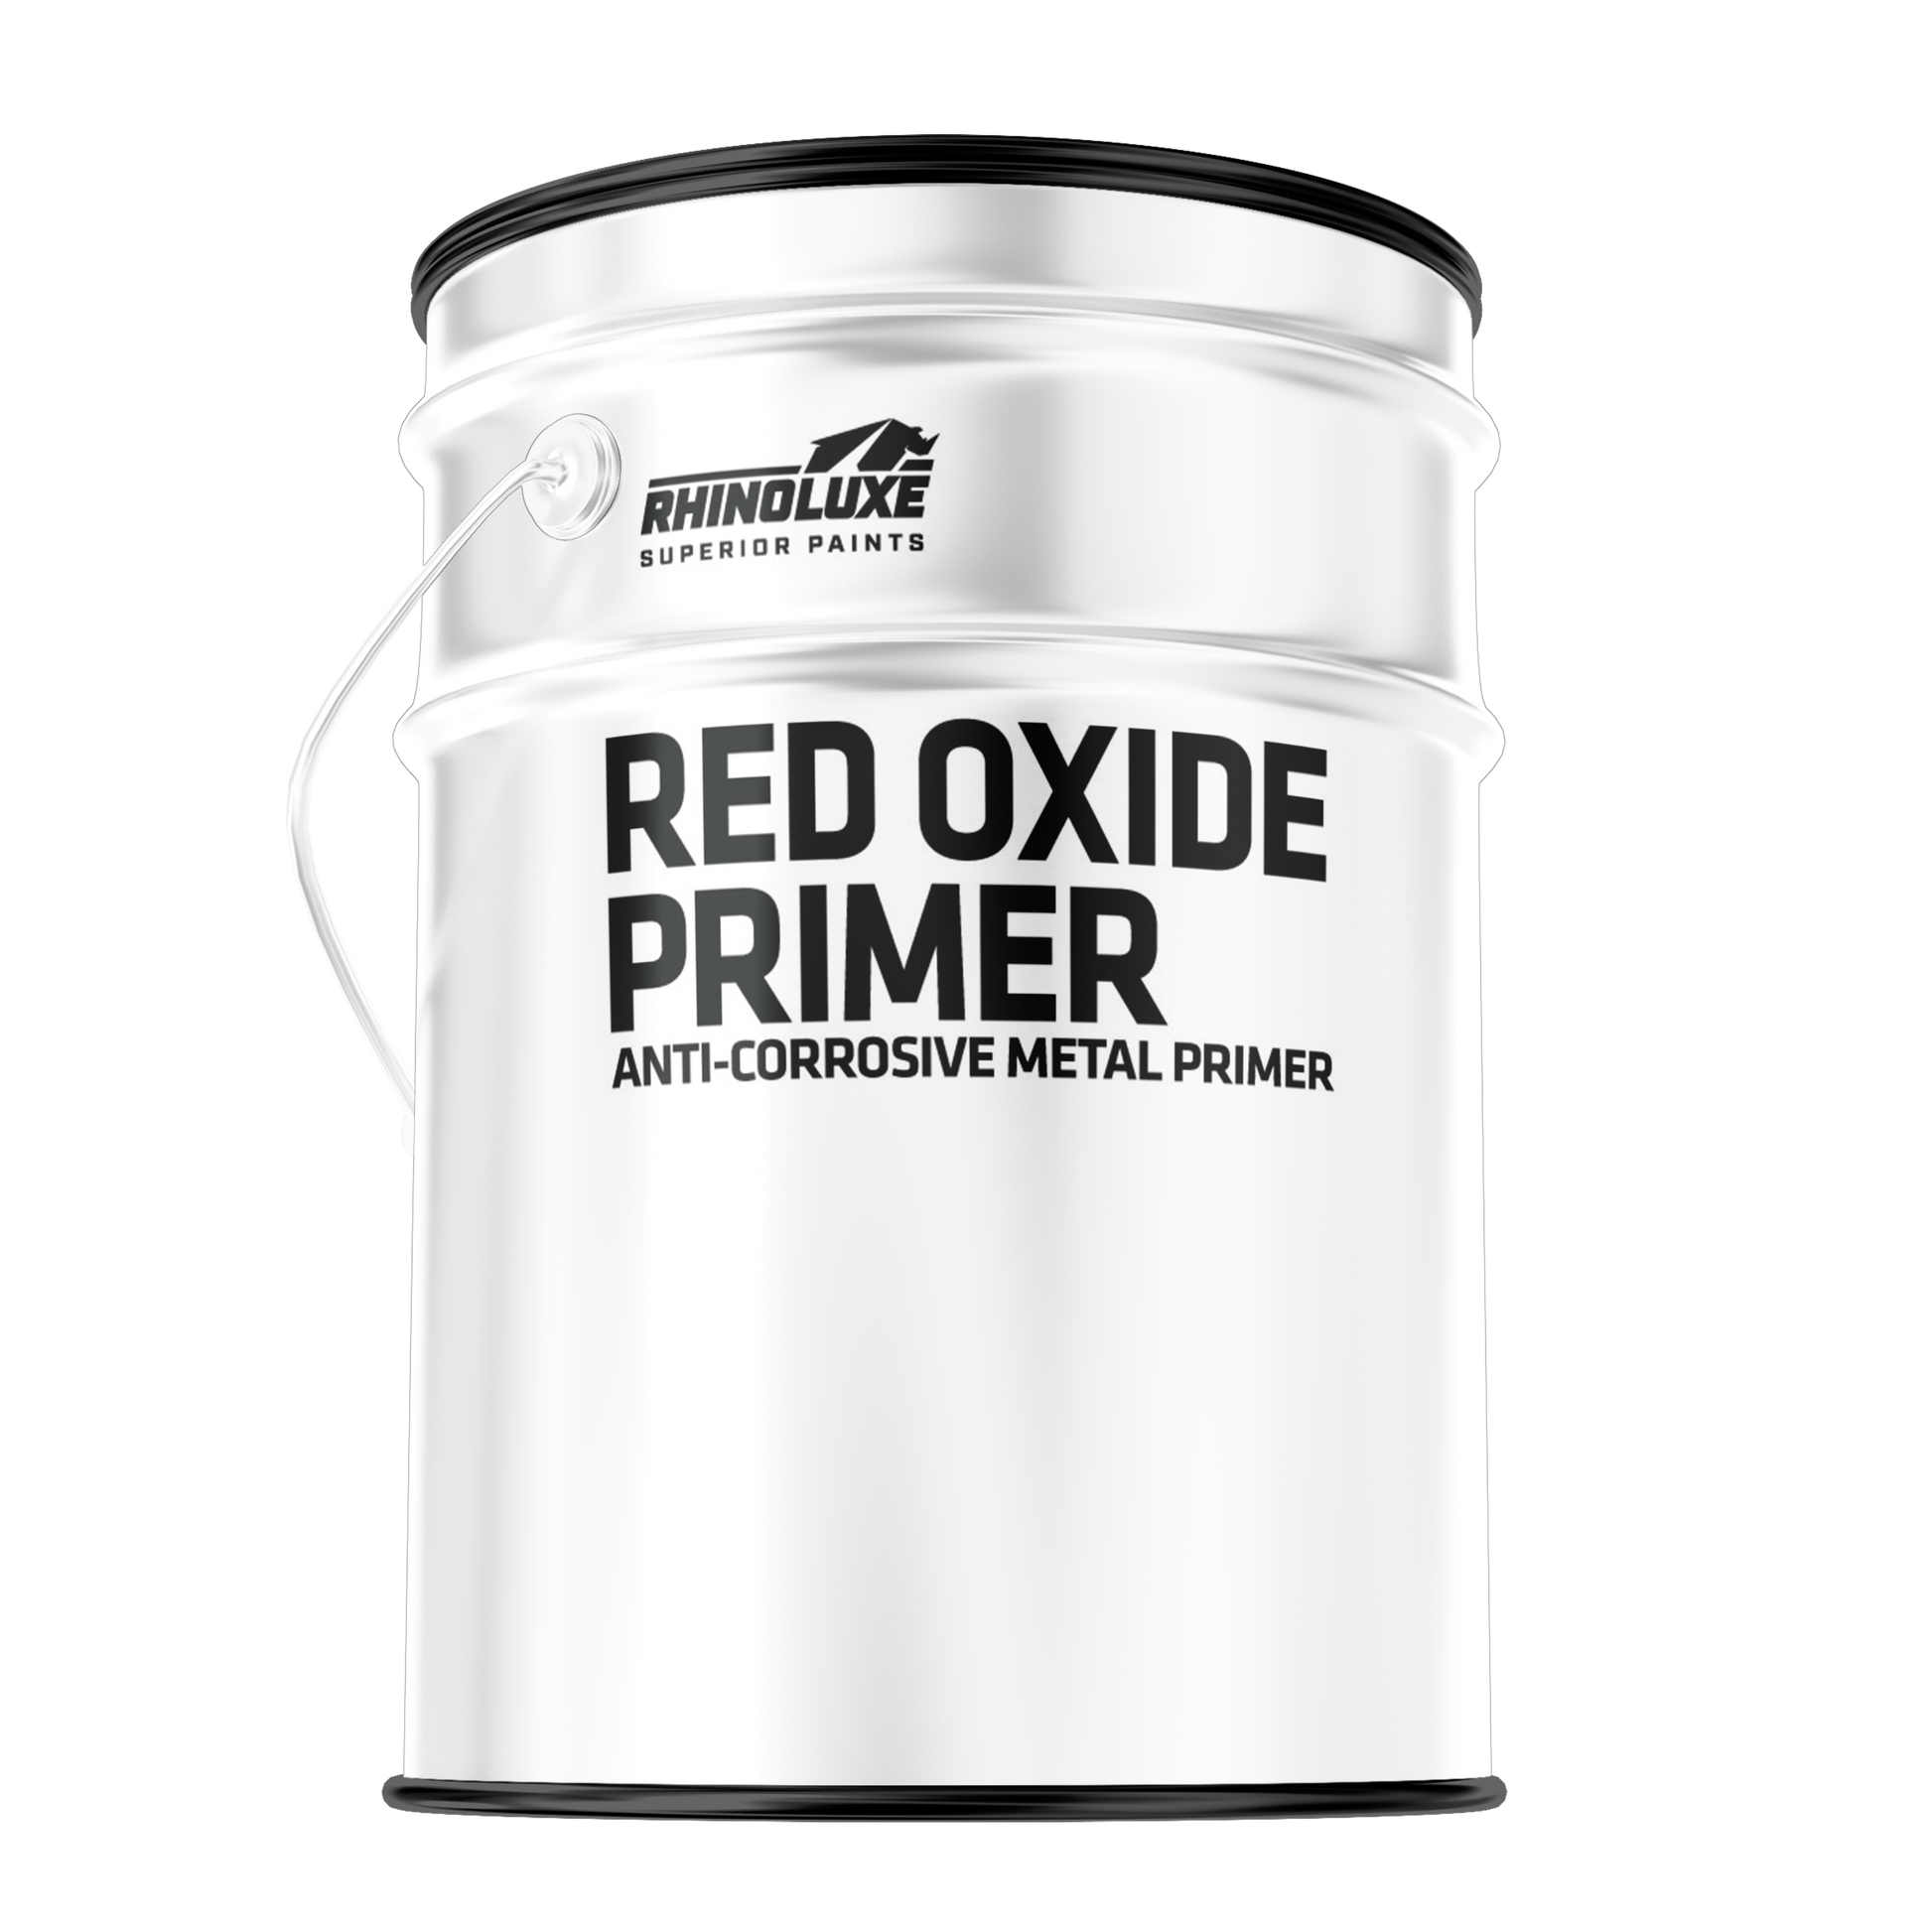 Red Oxide Primer Anti-Corrosive Metal Primer